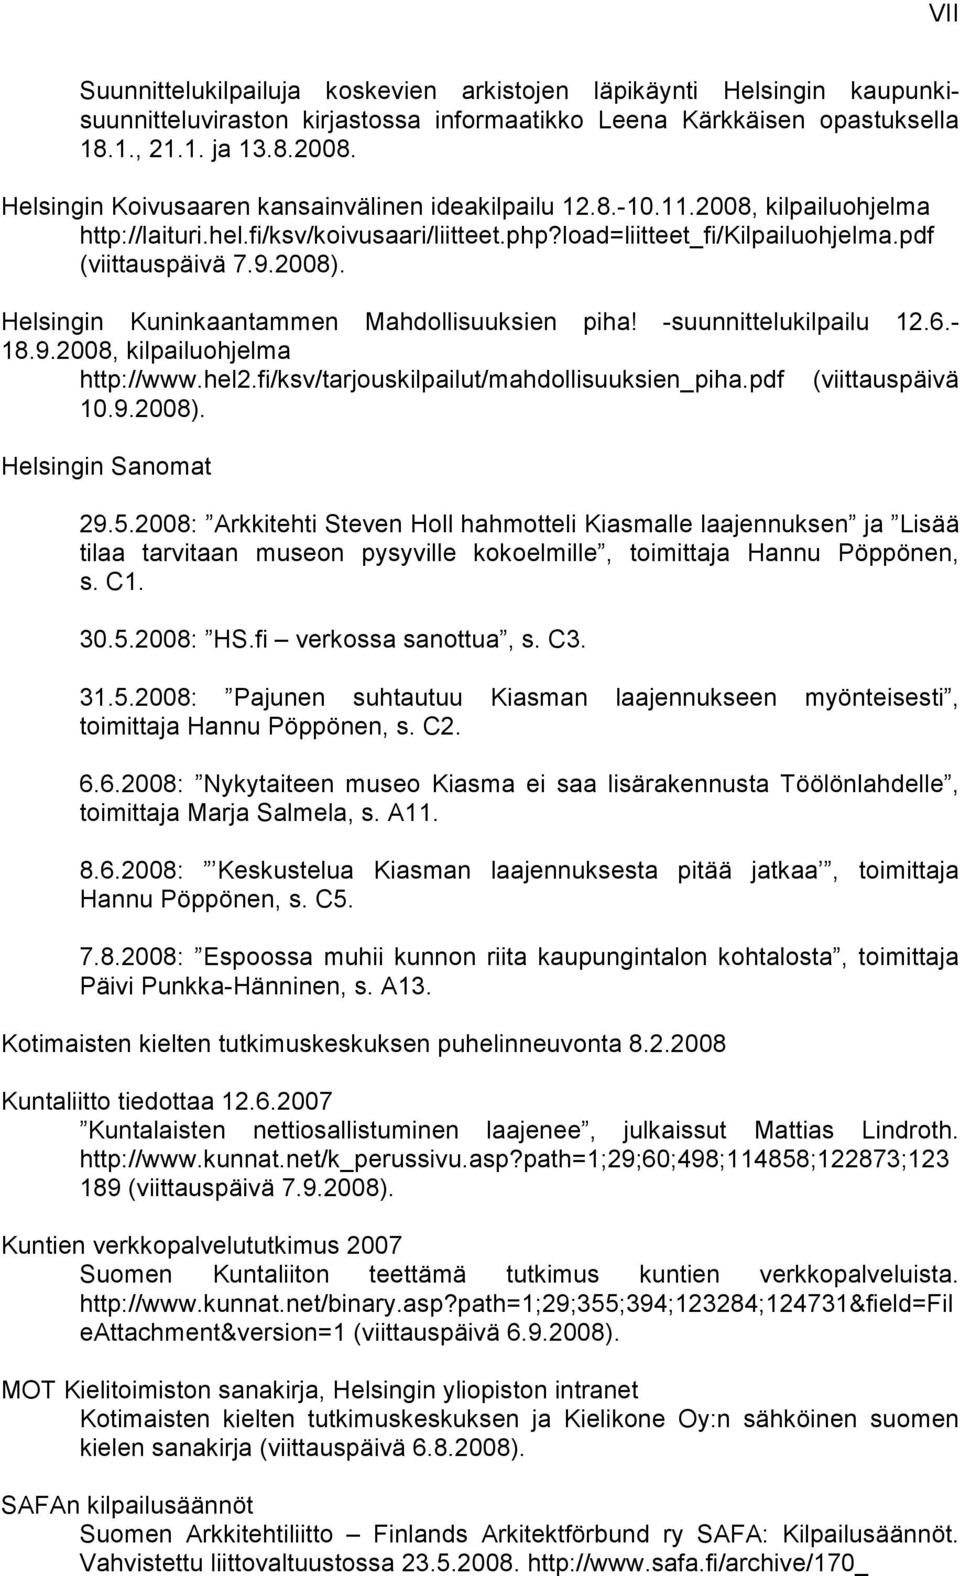 Helsingin Kuninkaantammen Mahdollisuuksien piha! -suunnittelukilpailu 12.6.- 18.9.2008, kilpailuohjelma http://www.hel2.fi/ksv/tarjouskilpailut/mahdollisuuksien_piha.pdf (viittauspäivä 10.9.2008).